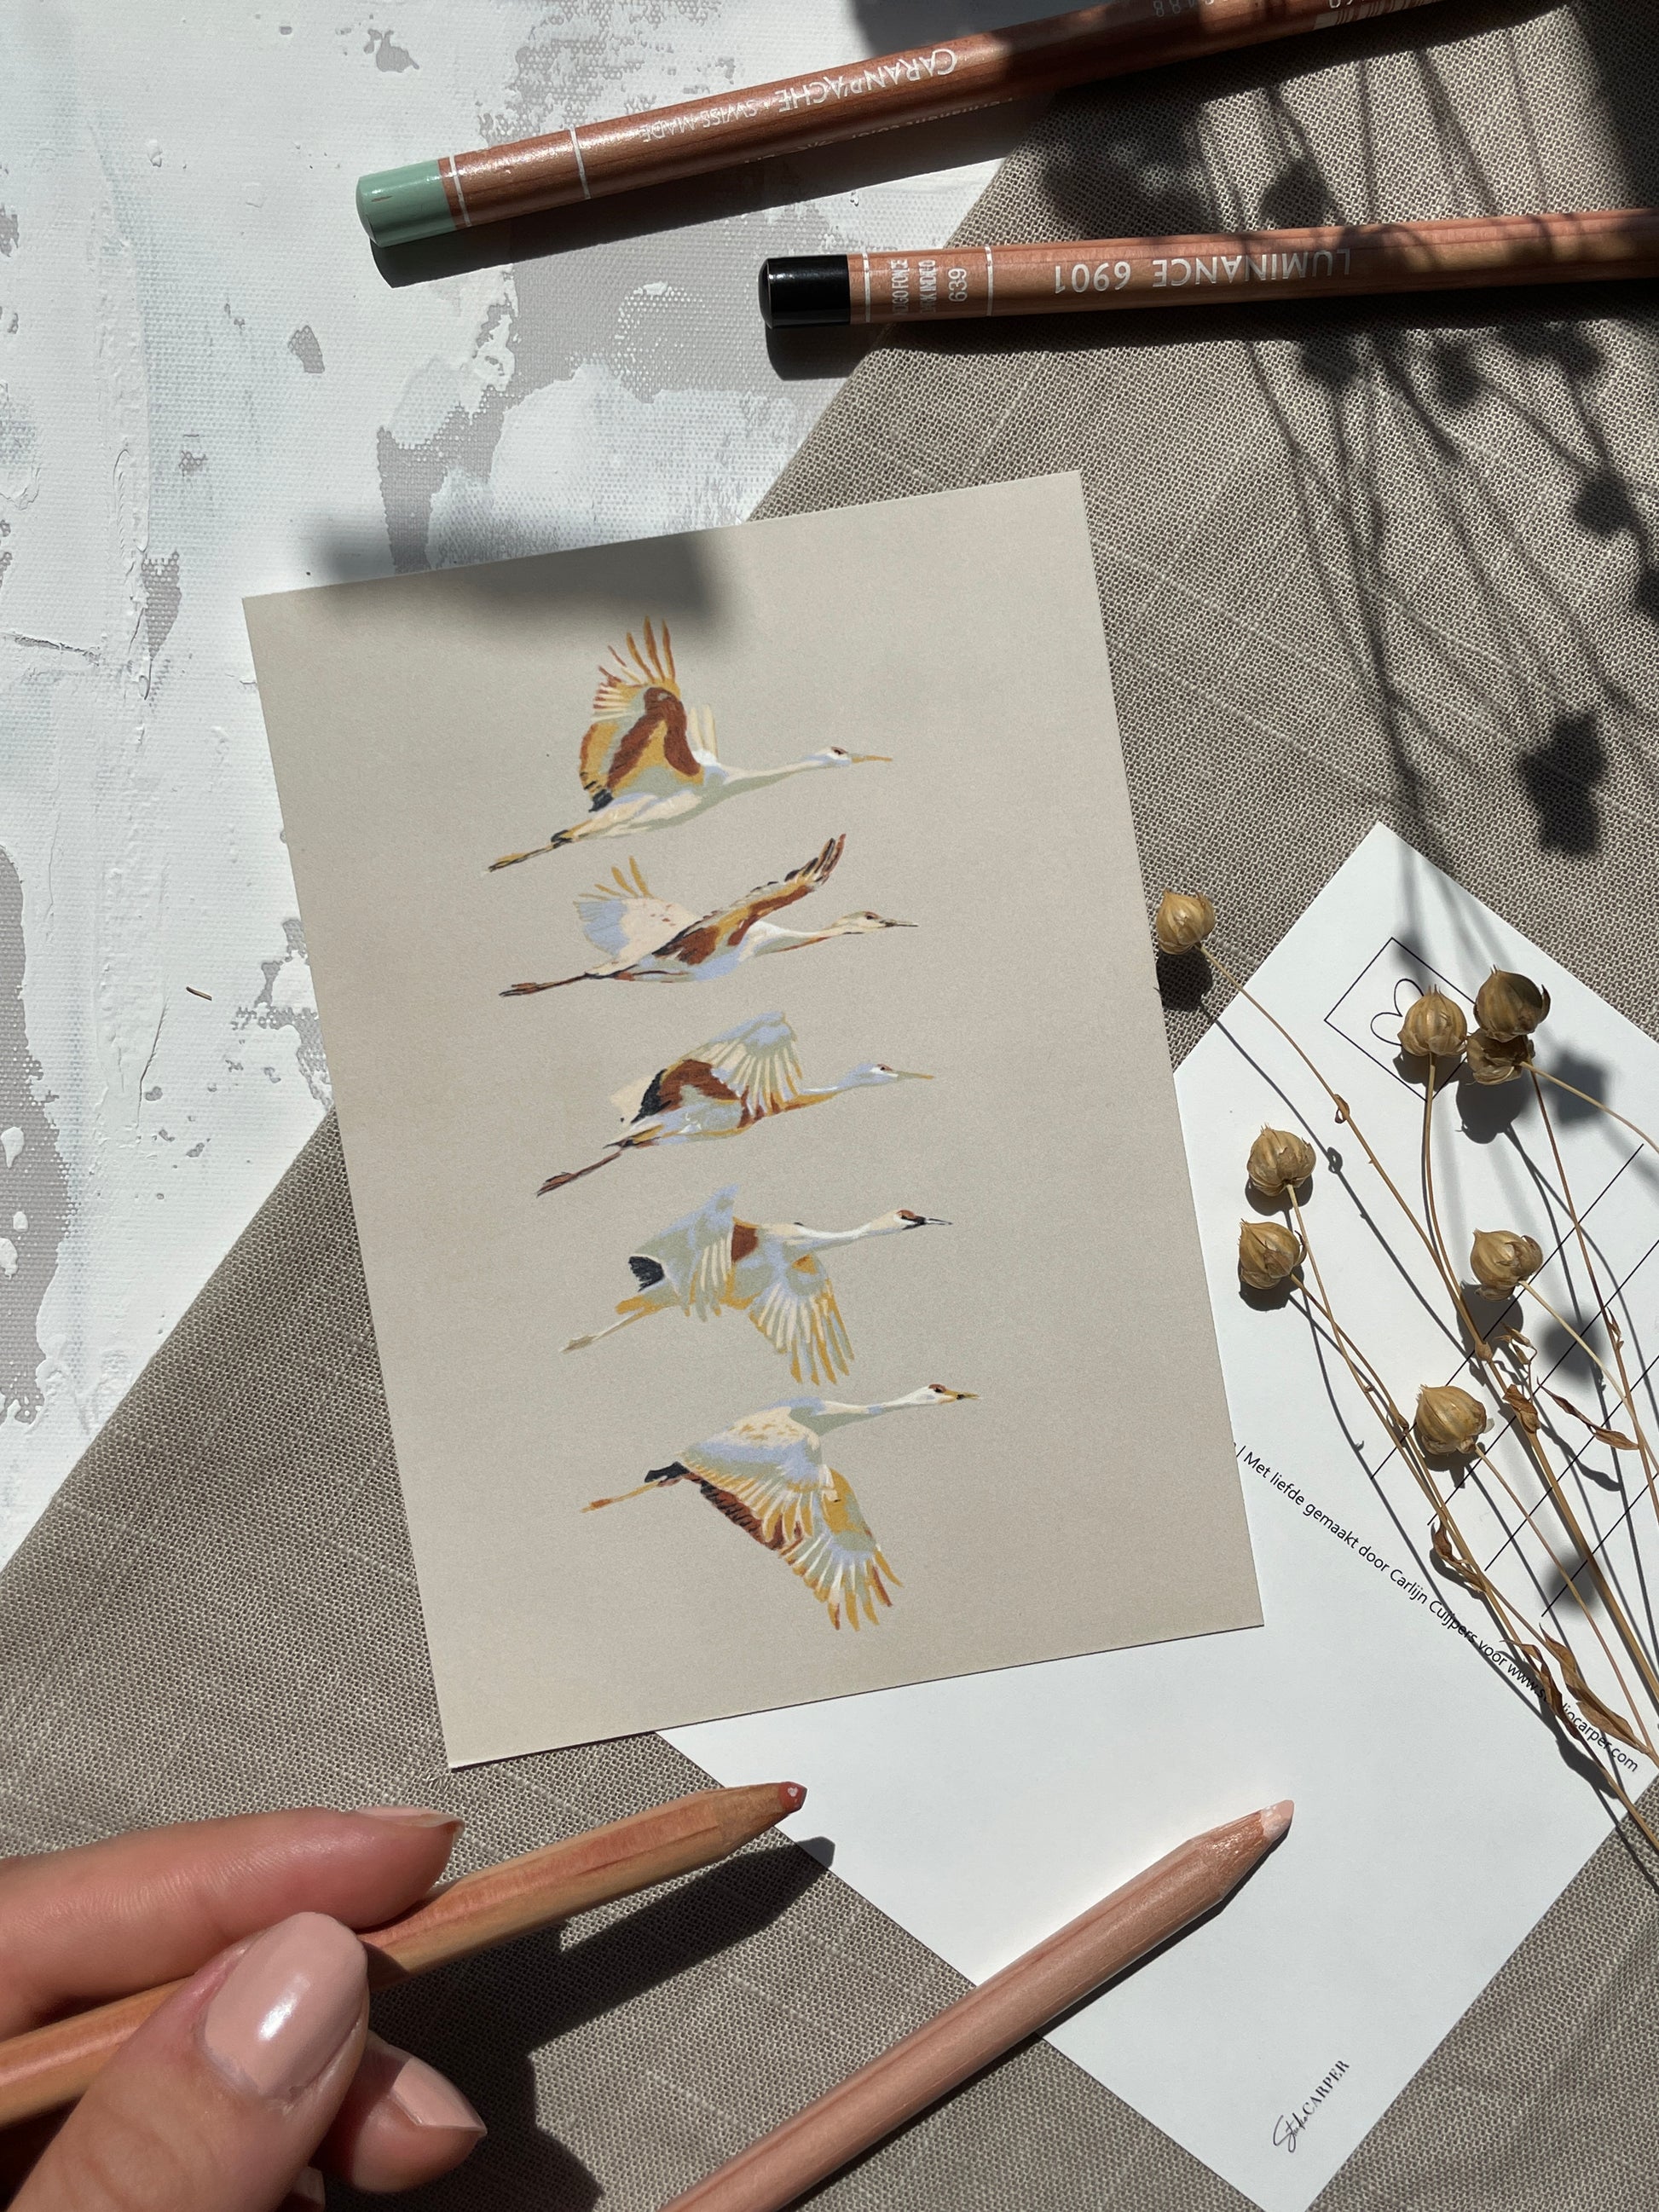 Ansichtkaart met kraanvogels. Kaart uit de zes delige ansichtkaarten set Birds. In de kaartsenset zijn alle zes de kunstwerken uit de serie Birds van Studio Carper te vinden. 